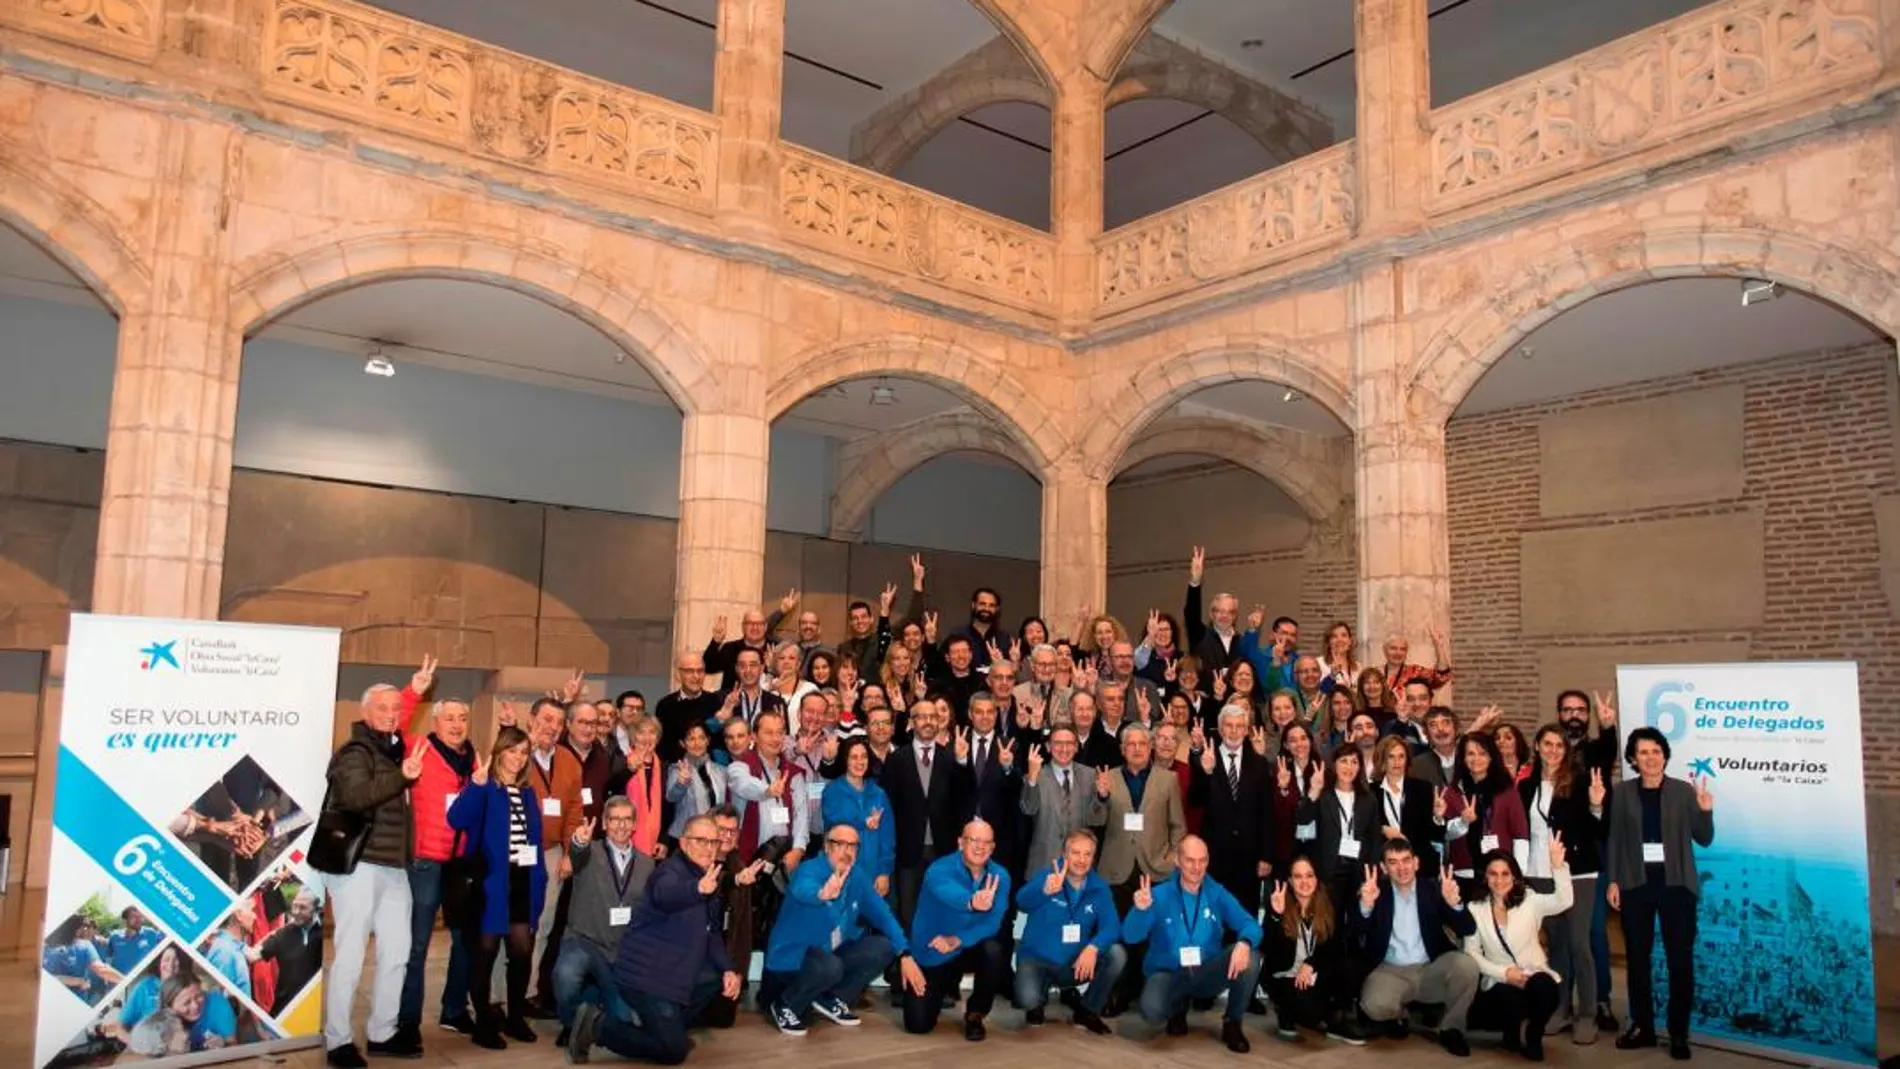 El director general de la Fundación Bancaria ”la Caixa”, Jaume Giró, acompañando de representantes de las 39 delegaciones de la Asociación de Voluntarios ”la Caixa” en toda España / Foto: La Razón